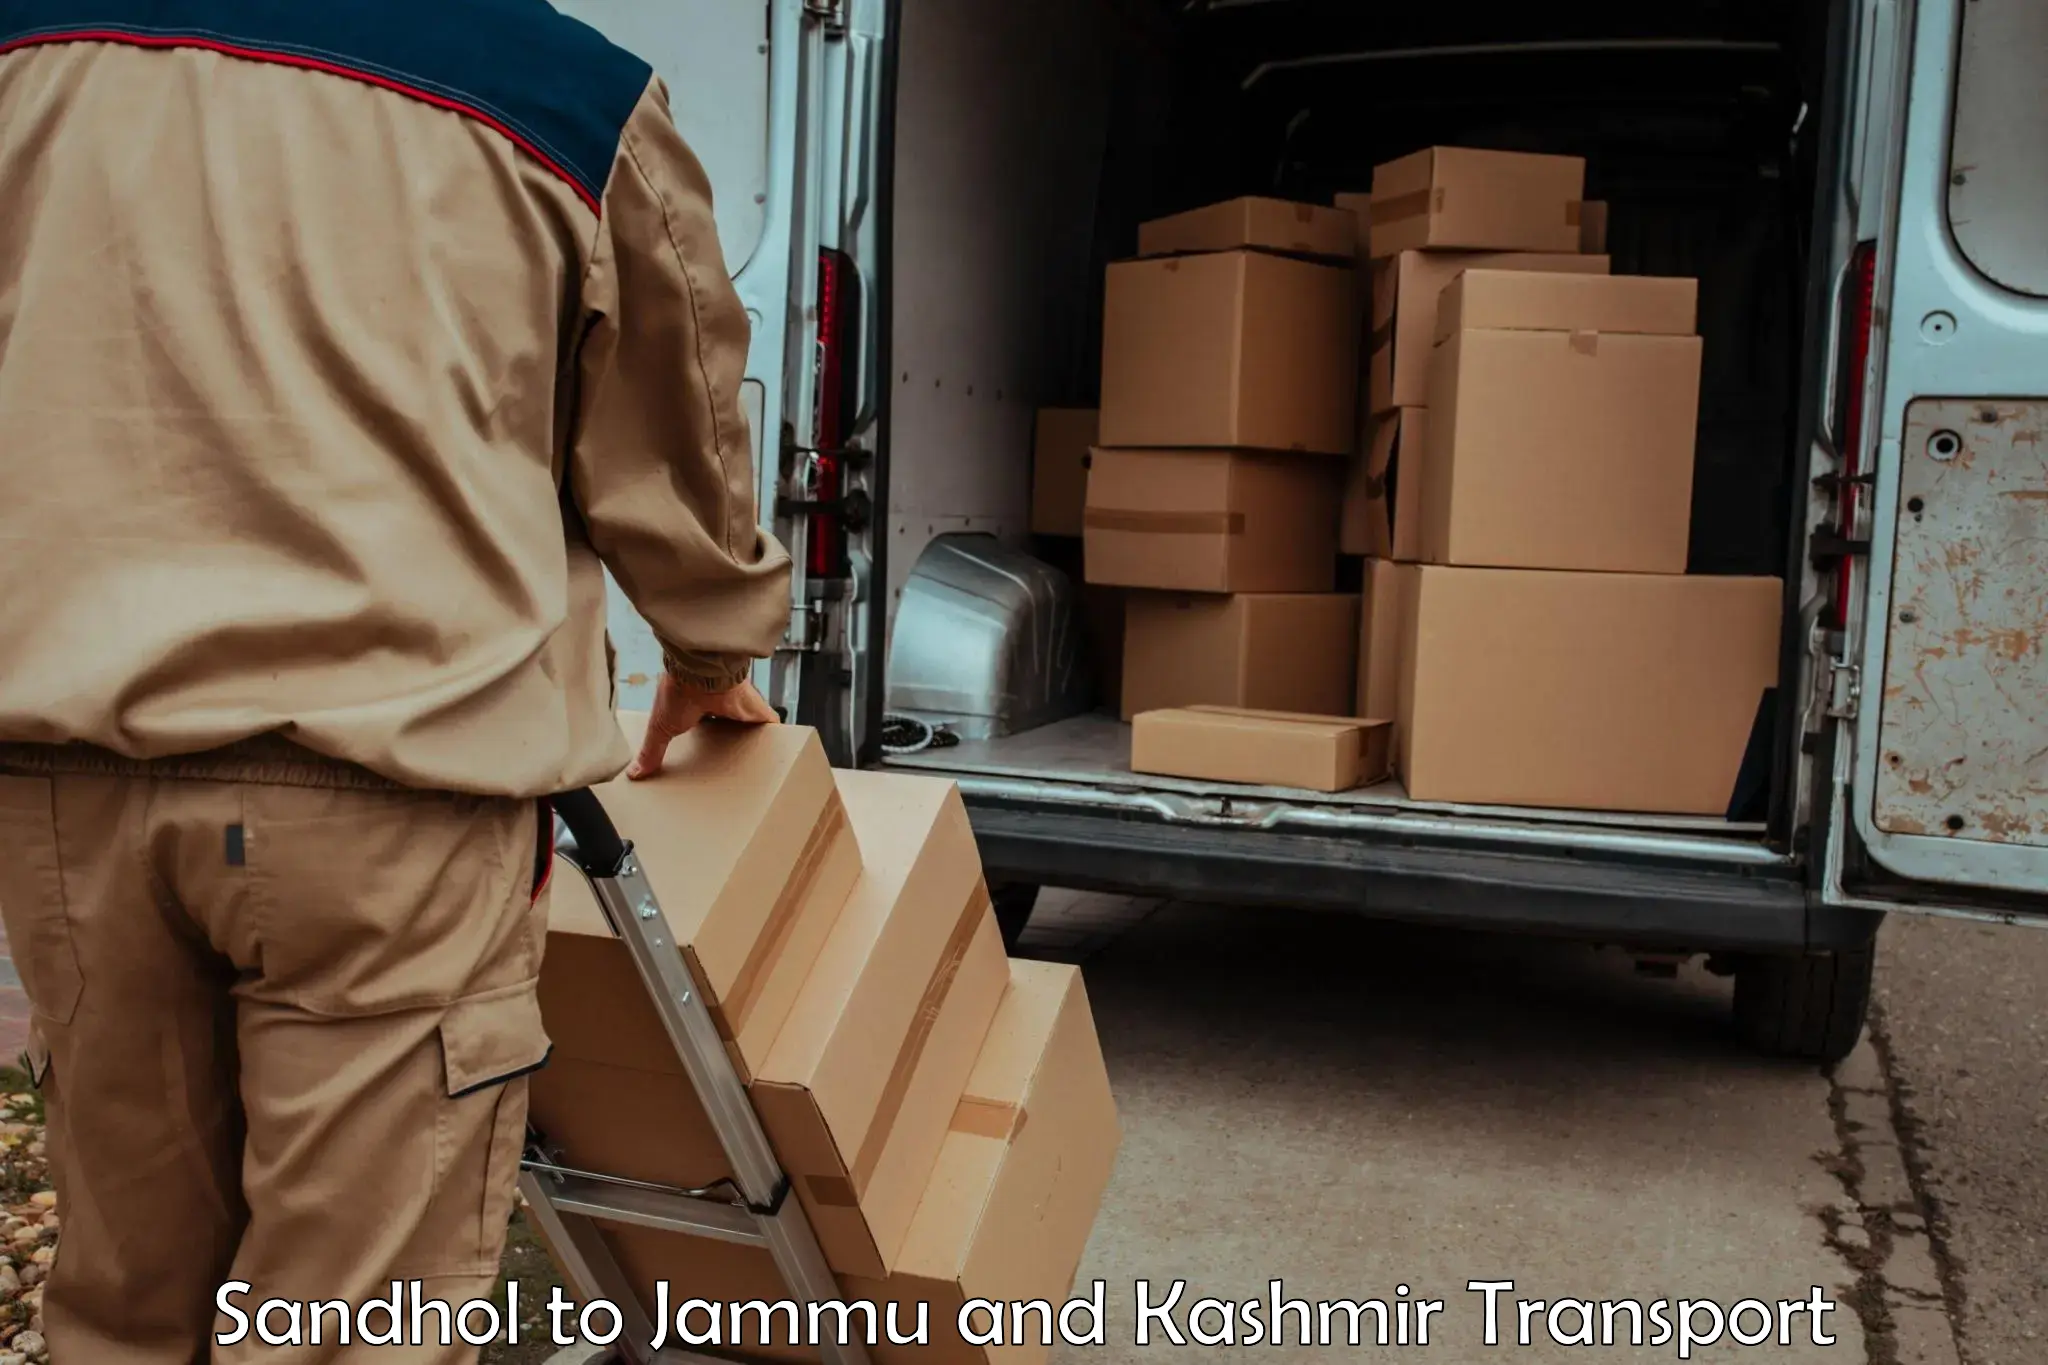 Daily parcel service transport Sandhol to Kishtwar